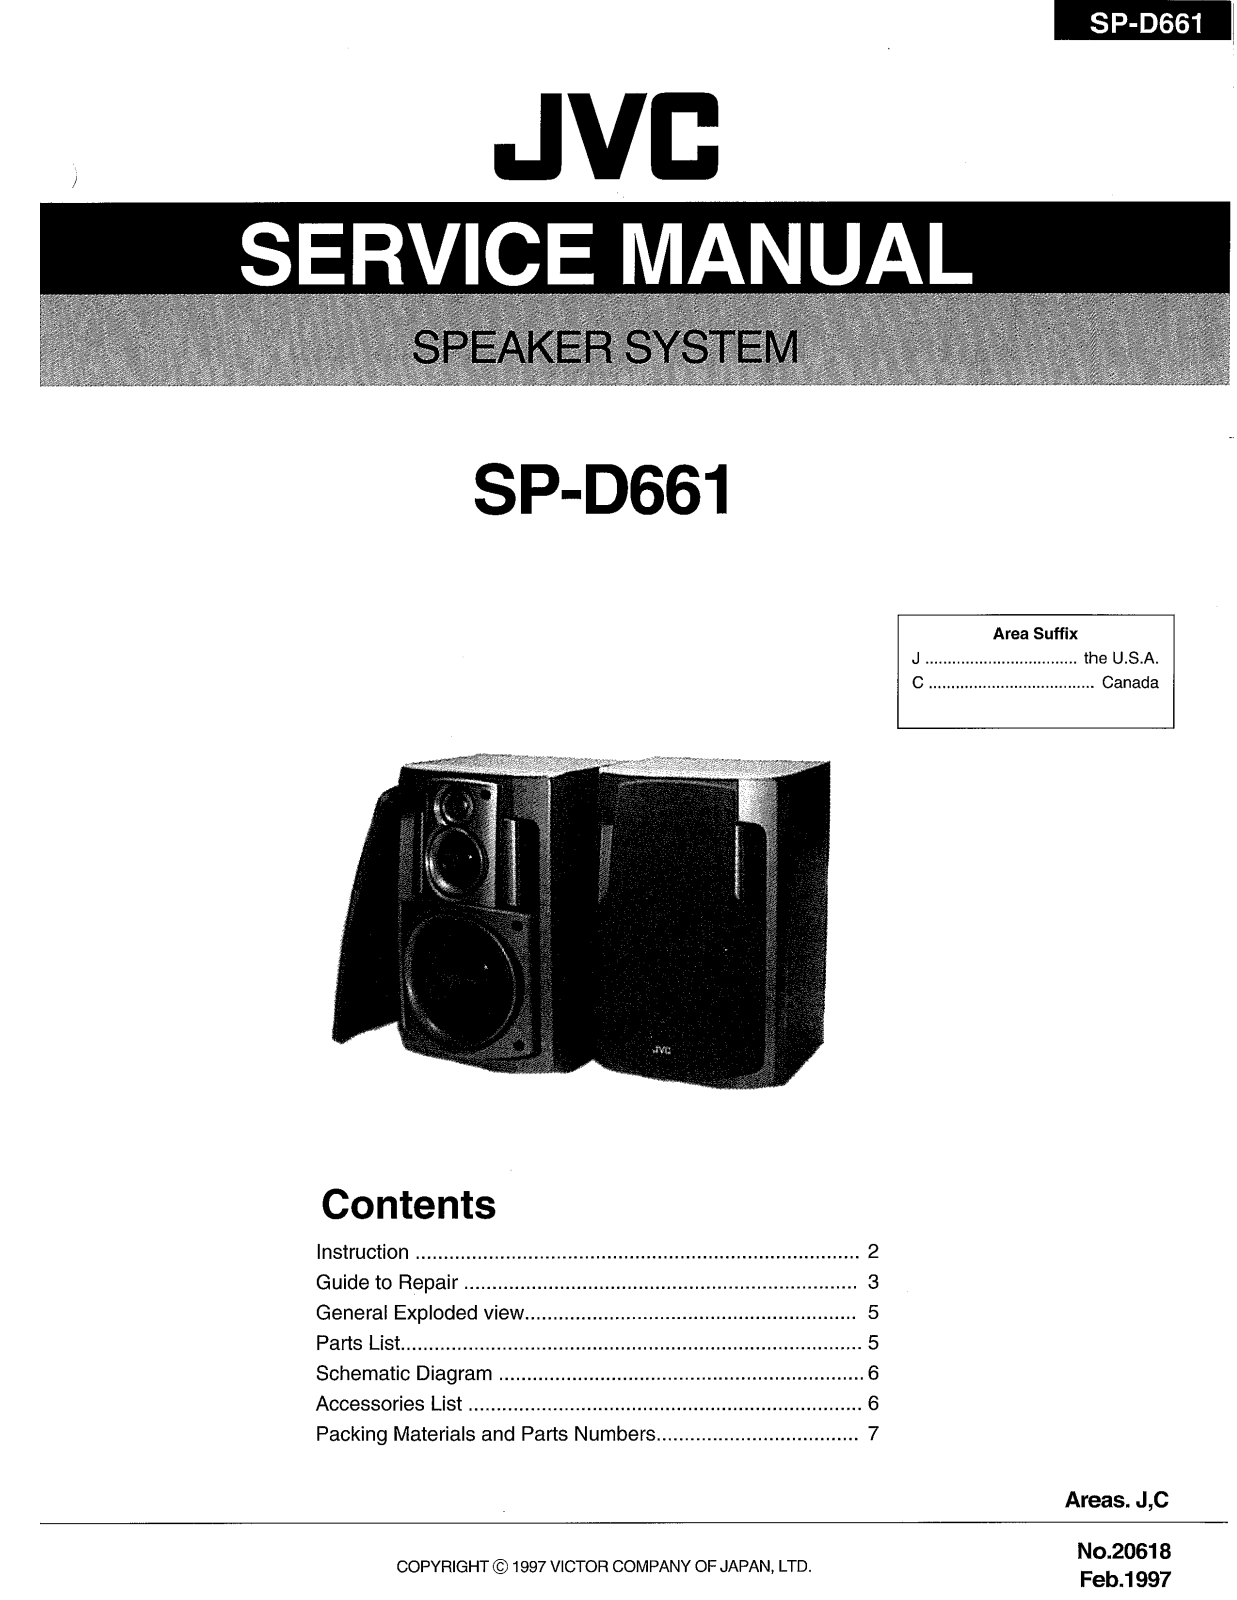 JVC SP-D661T Service Manual